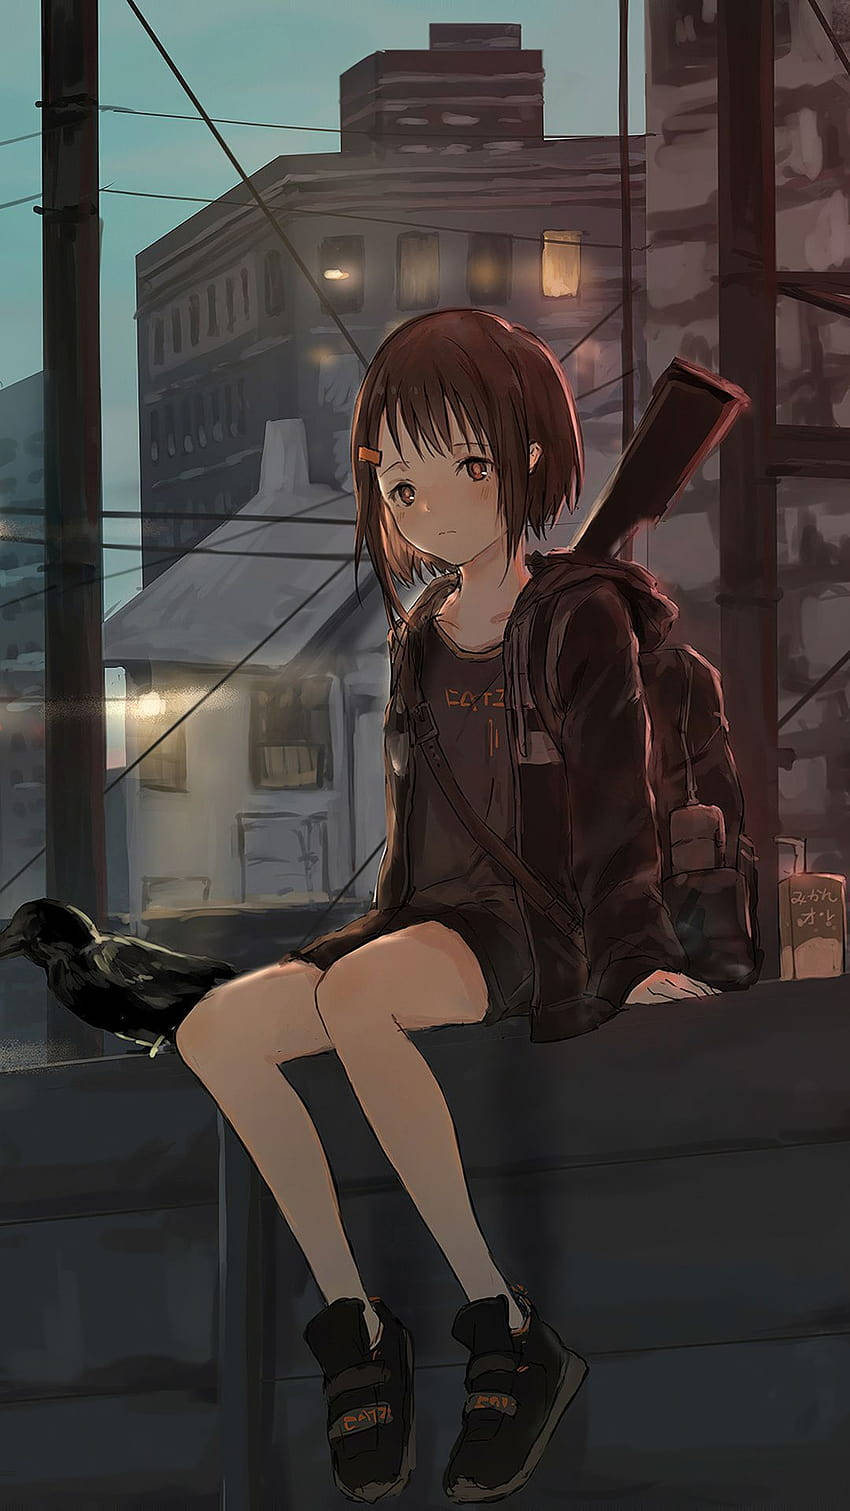 En pige sidder på en kant med et gevær i sin hånd. Wallpaper